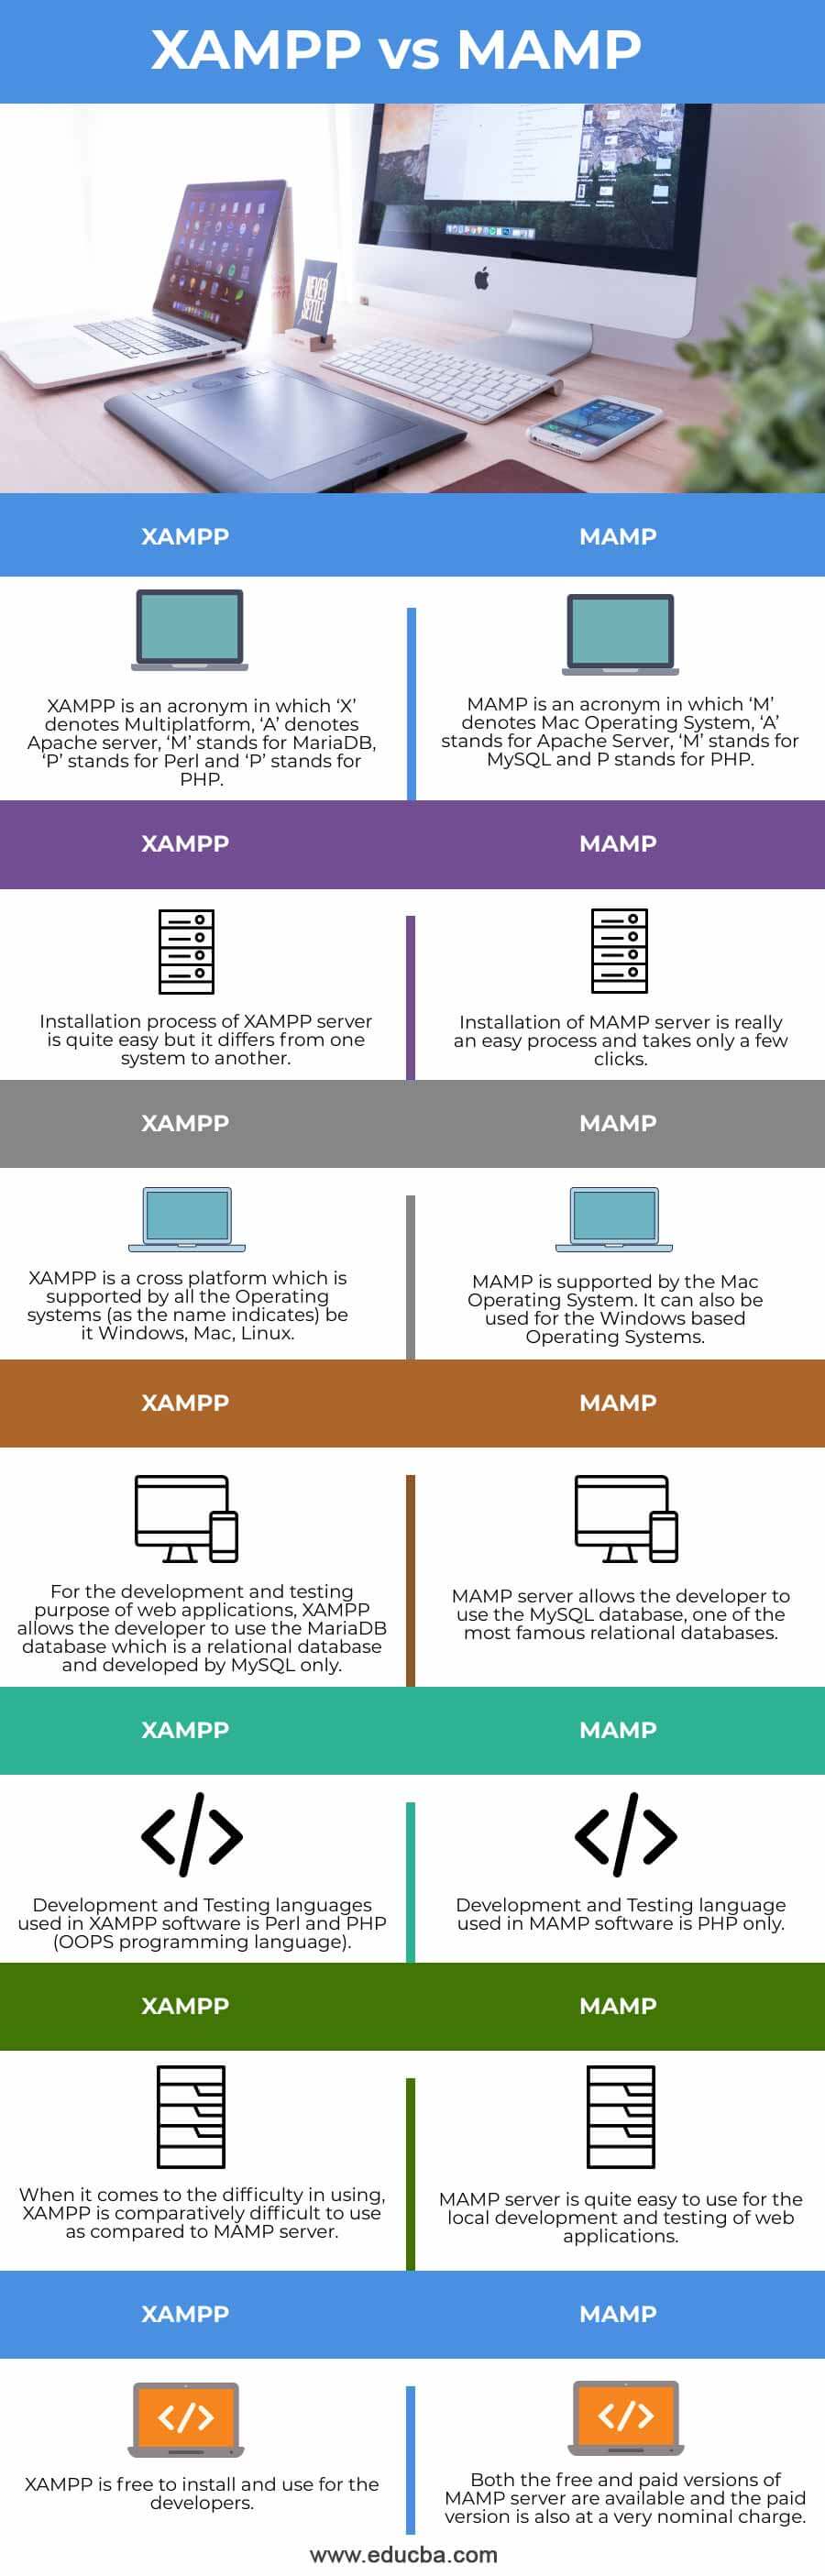 XAMPP-vs-MAMP-info